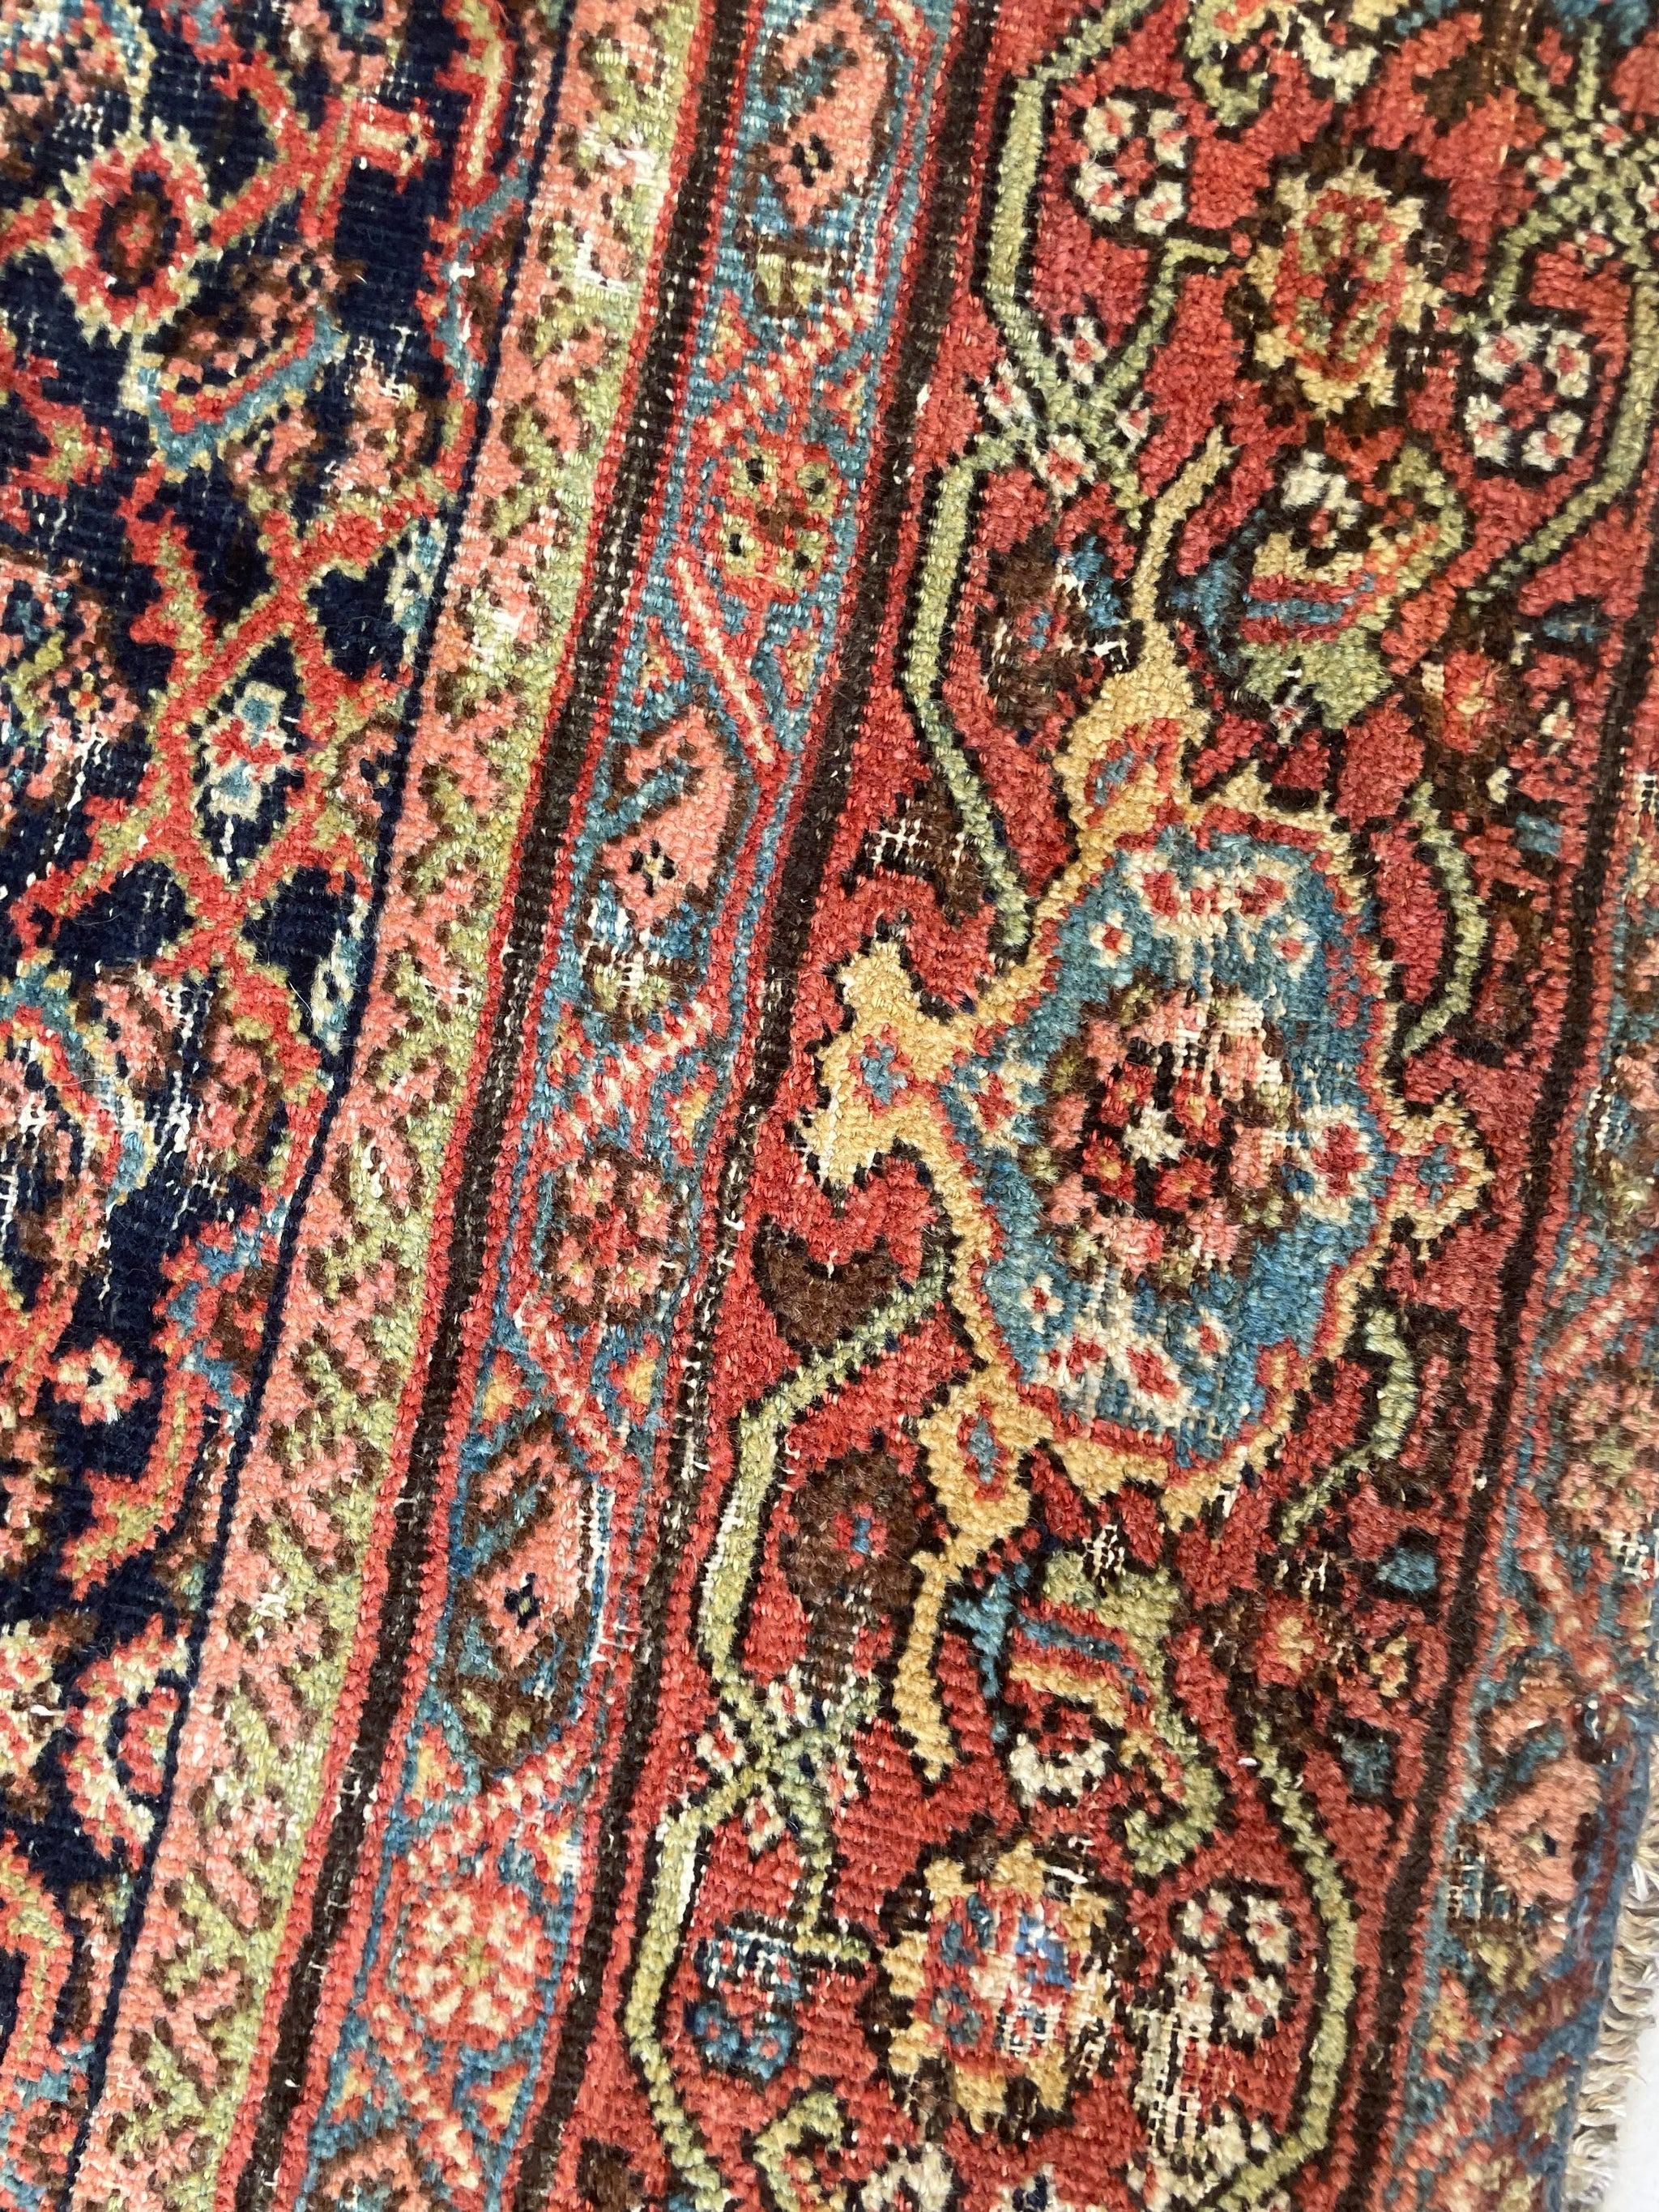 Antique Persian Carpet Rug in Deep Old-World Indigo, circa 1900-1915's For Sale 4